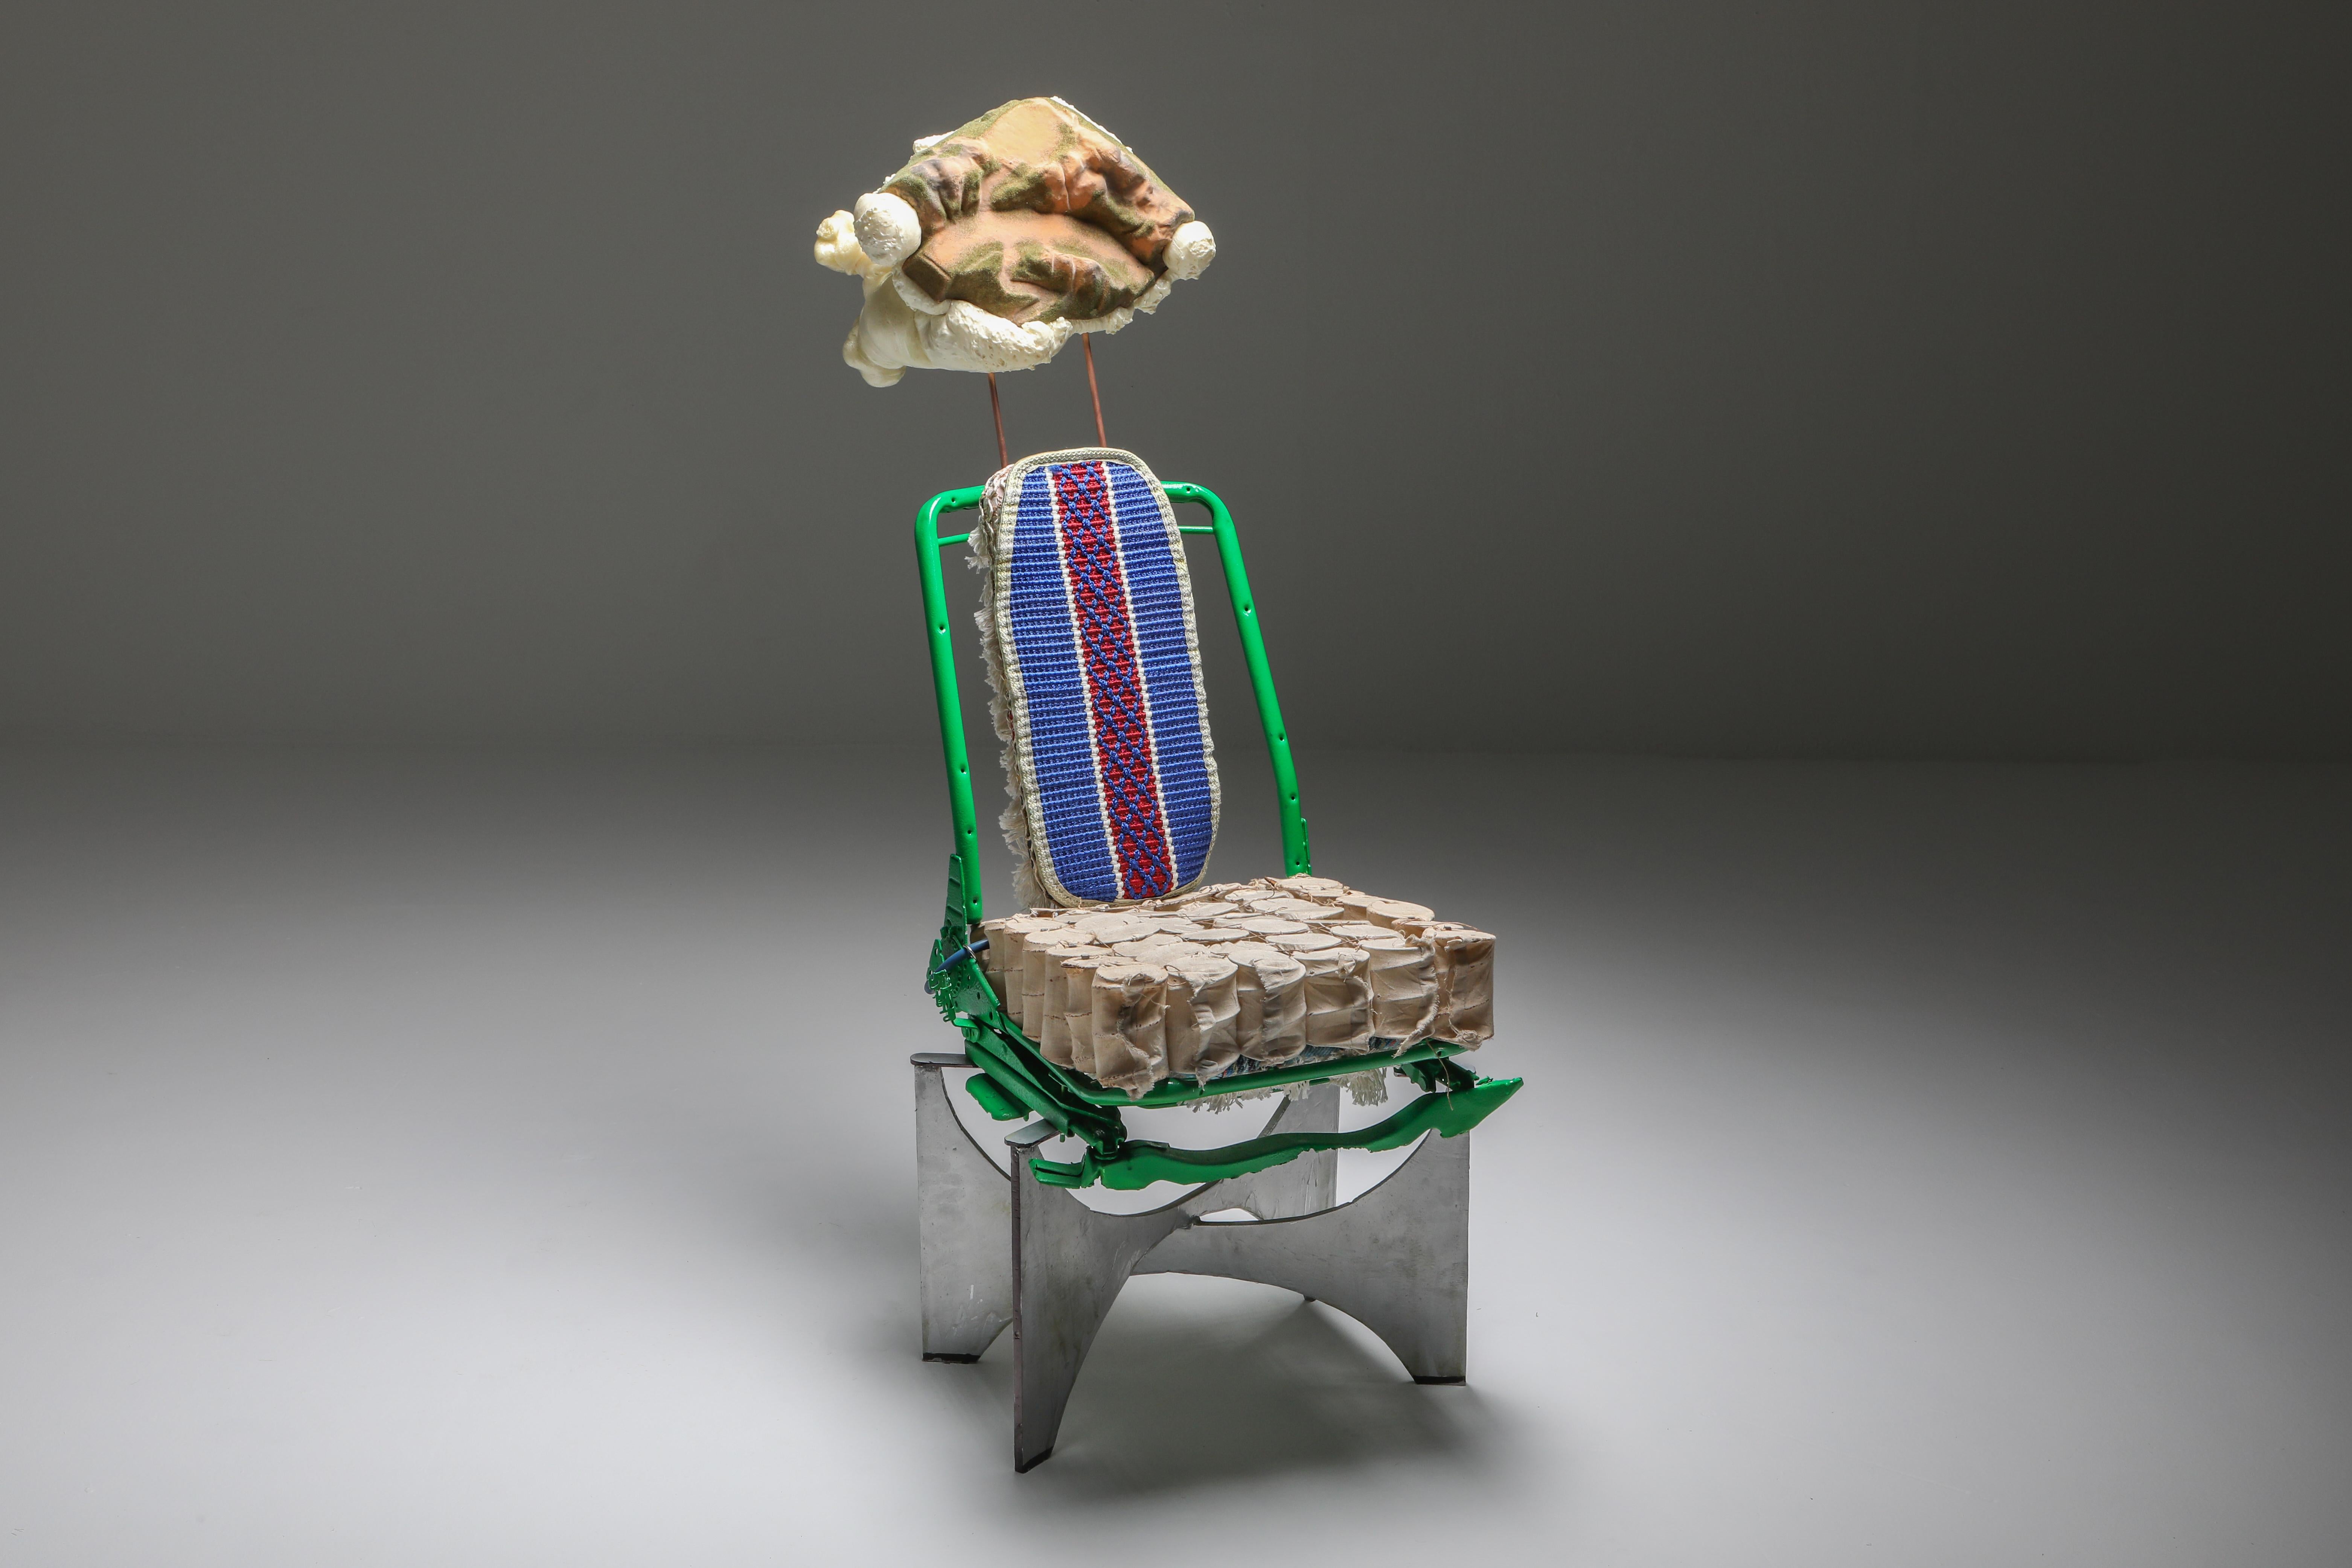 Belgian 'The King of Tiébélé' Assemblage Chair, with Backrest from Tiébélé, Lionel Jadot